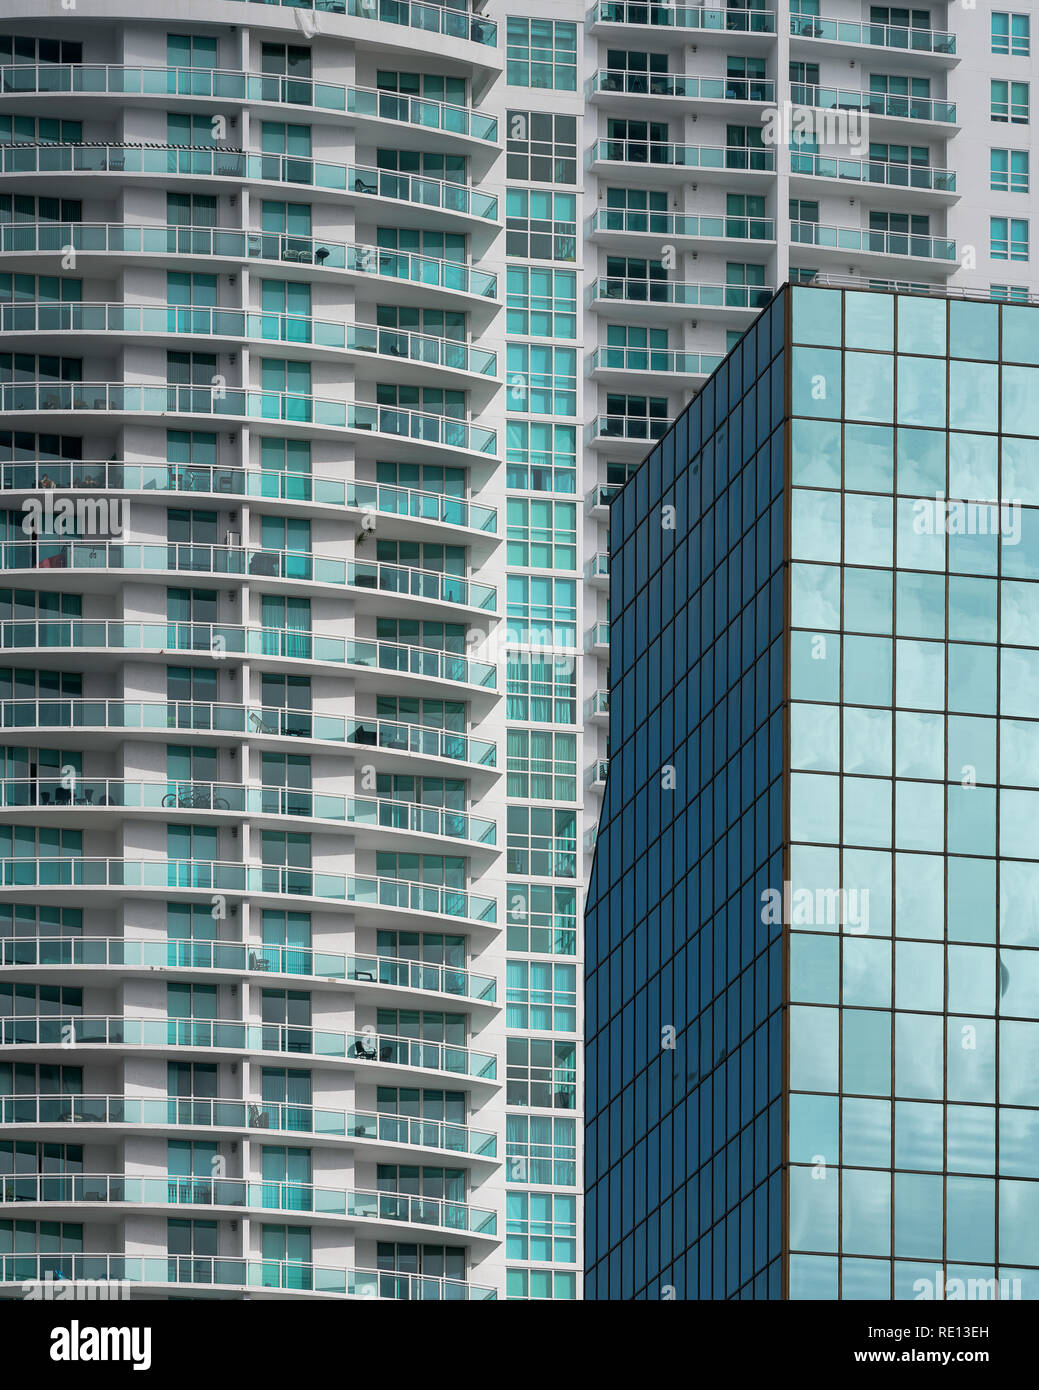 Résumé de l'architecture des bâtiments le long de l'avenue Brickell dans le centre-ville de Miami, Floride Banque D'Images